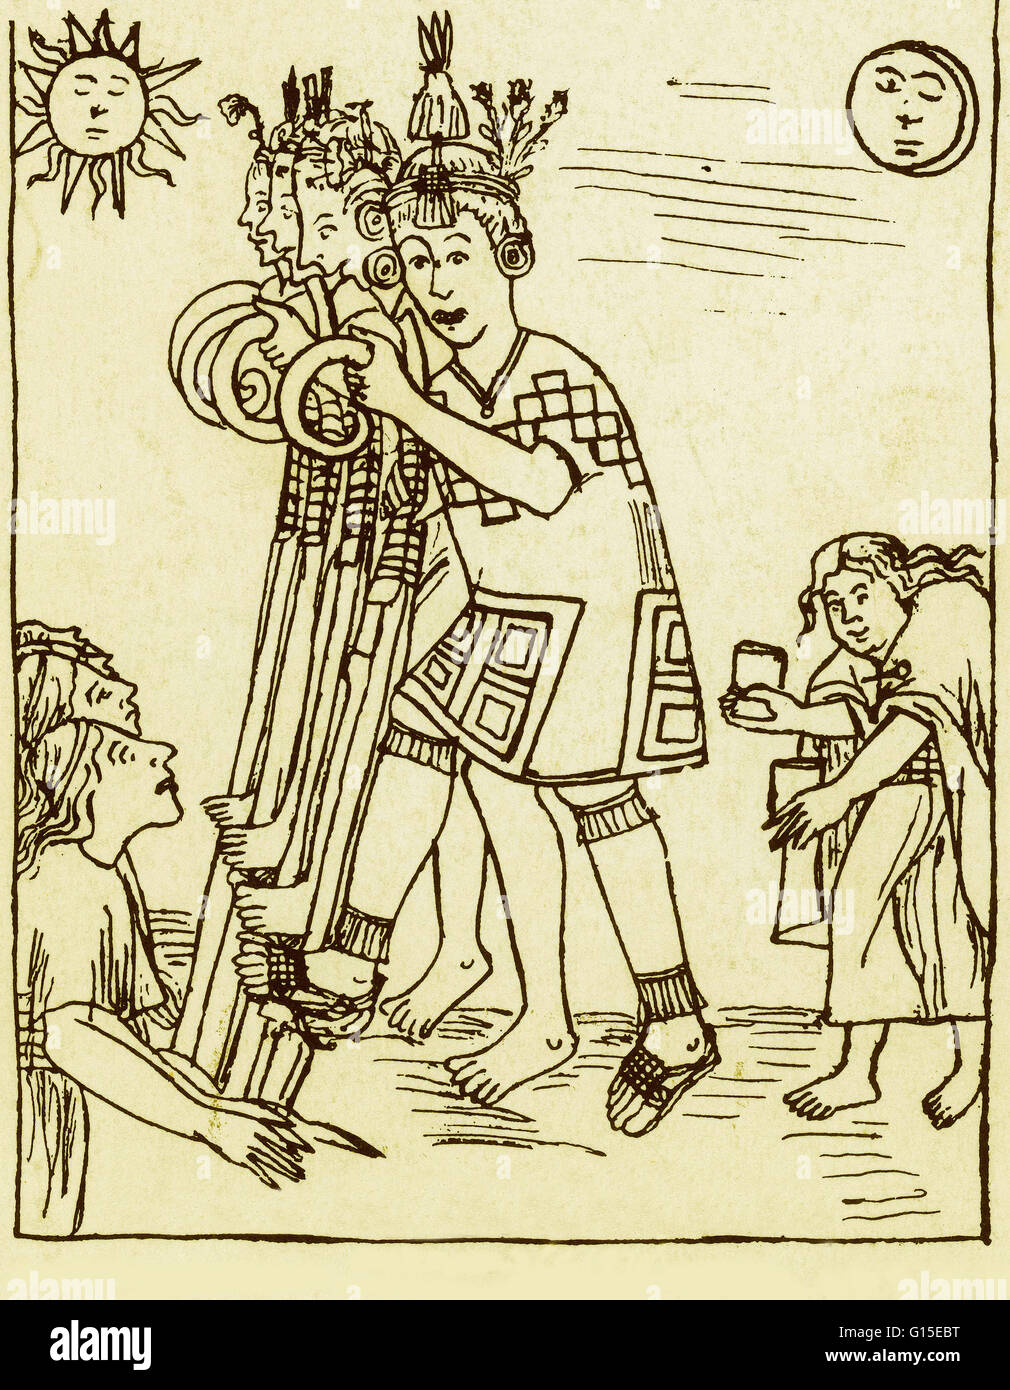 Dal peruviano illustrato codex 'Nueva Coronica y Buen Gobierno' o 'Nuovo cronaca e buon governo", all'inizio del XVII secolo. Scritto ed illustrato da Felipe Guaman Poma de Ayala. Foto Stock